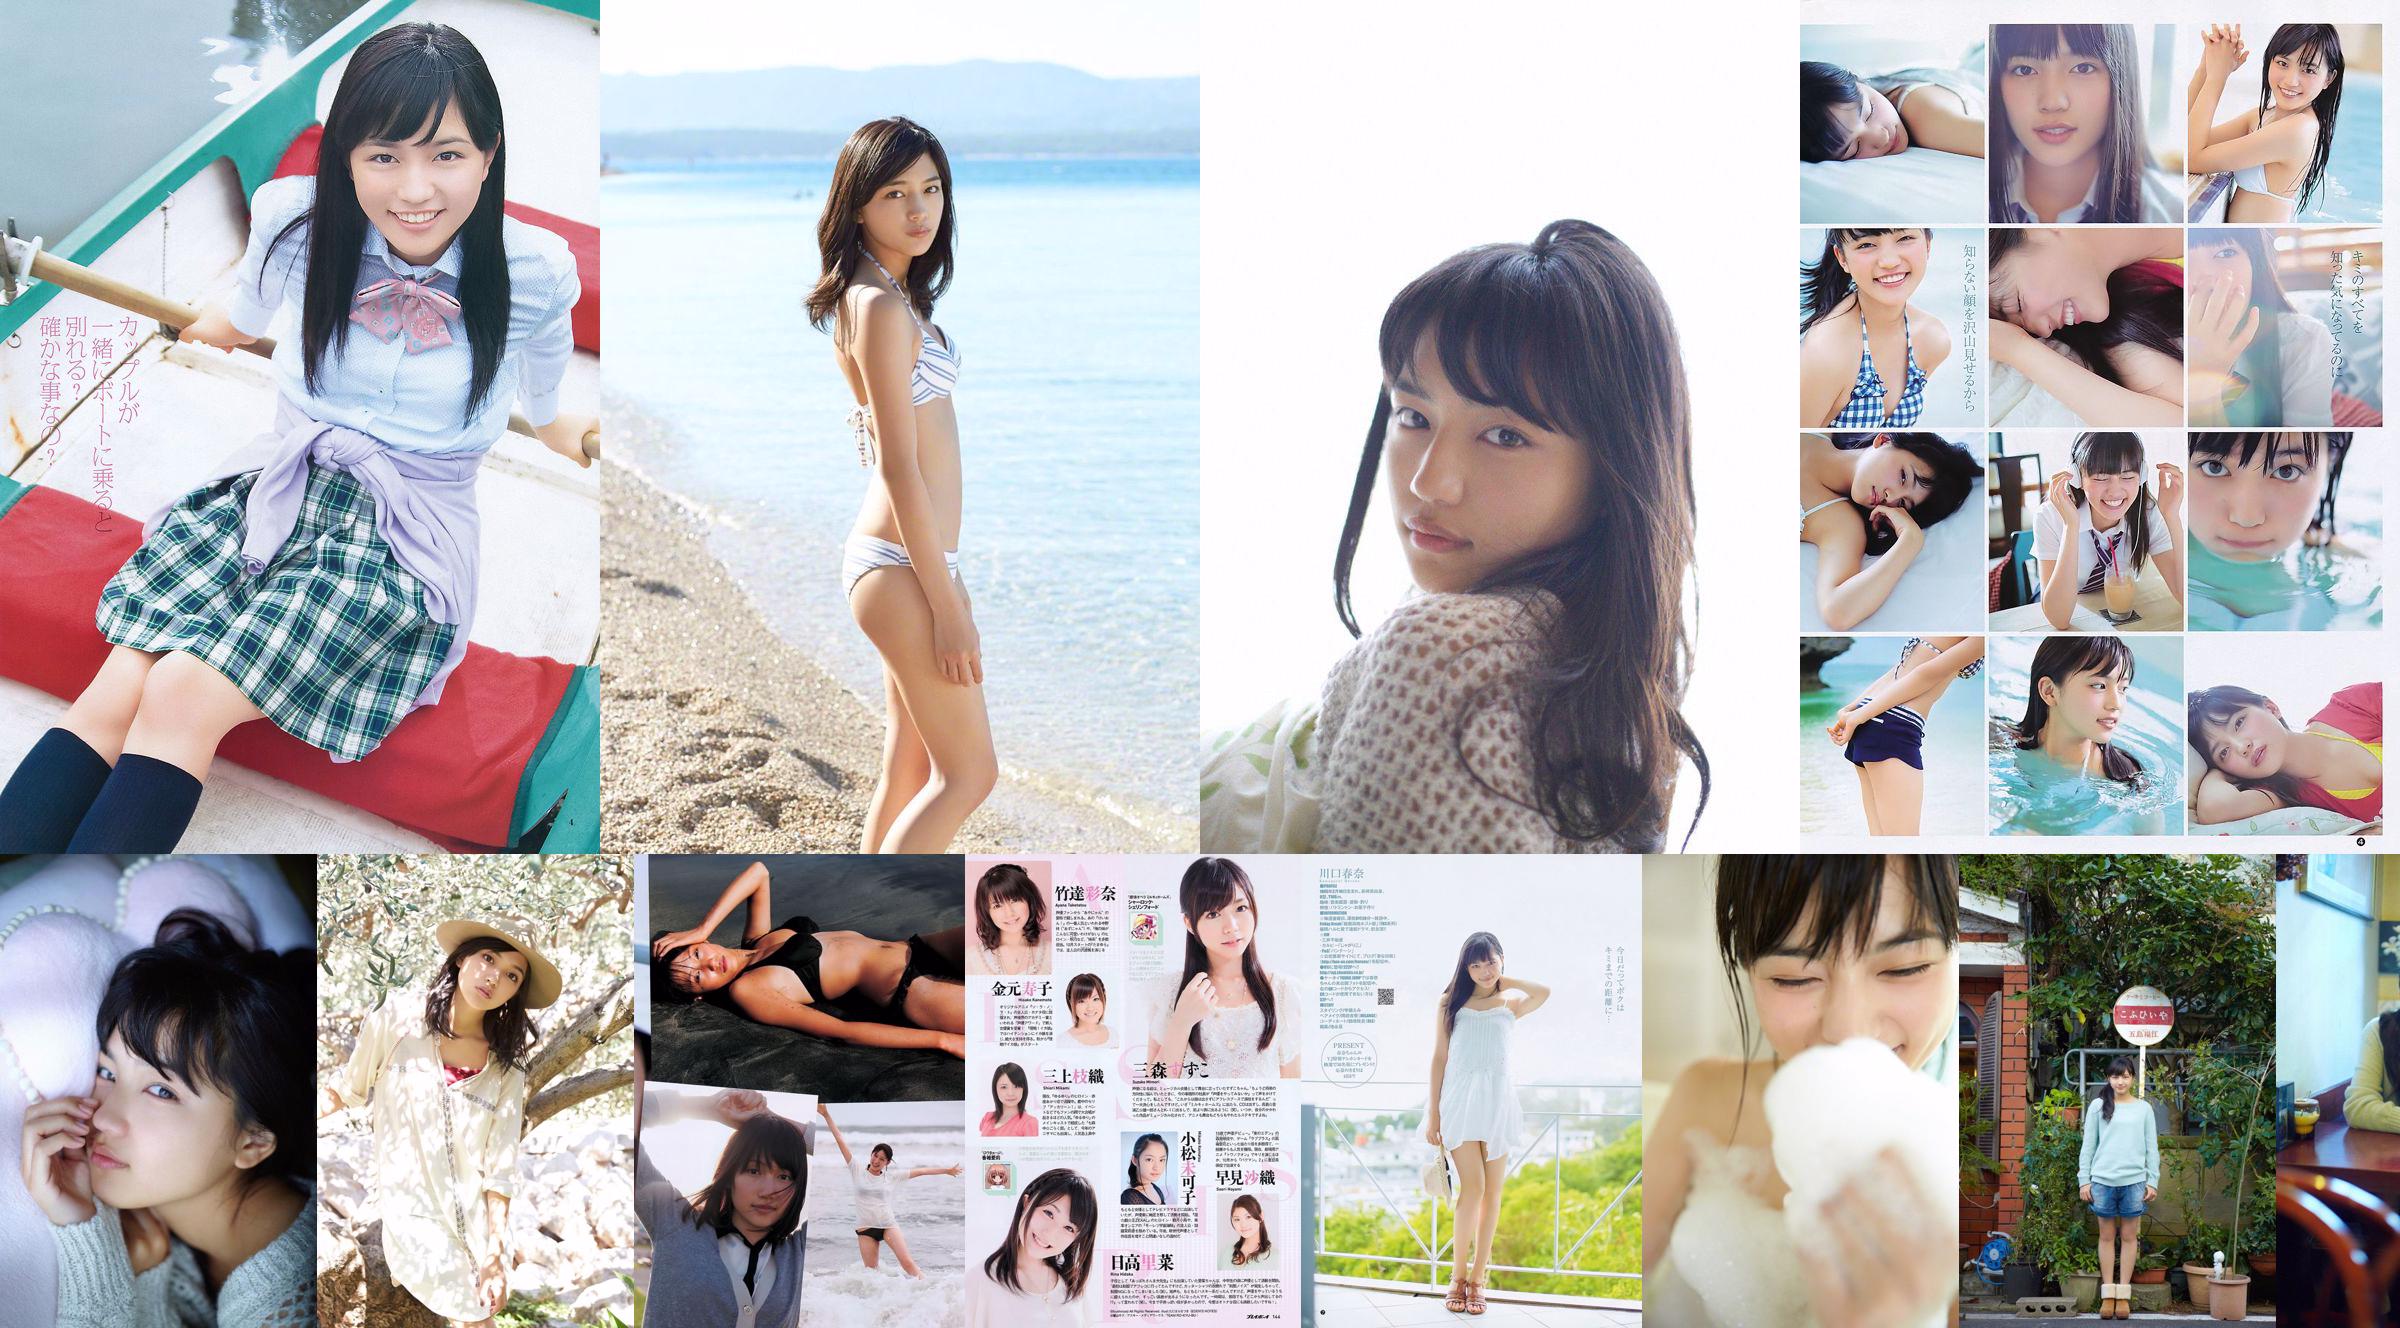 Haruna Kawaguchi Yumi Sugimoto [Weekly Young Jump] 2012 No.18 Photograph No.400621 Страница 1